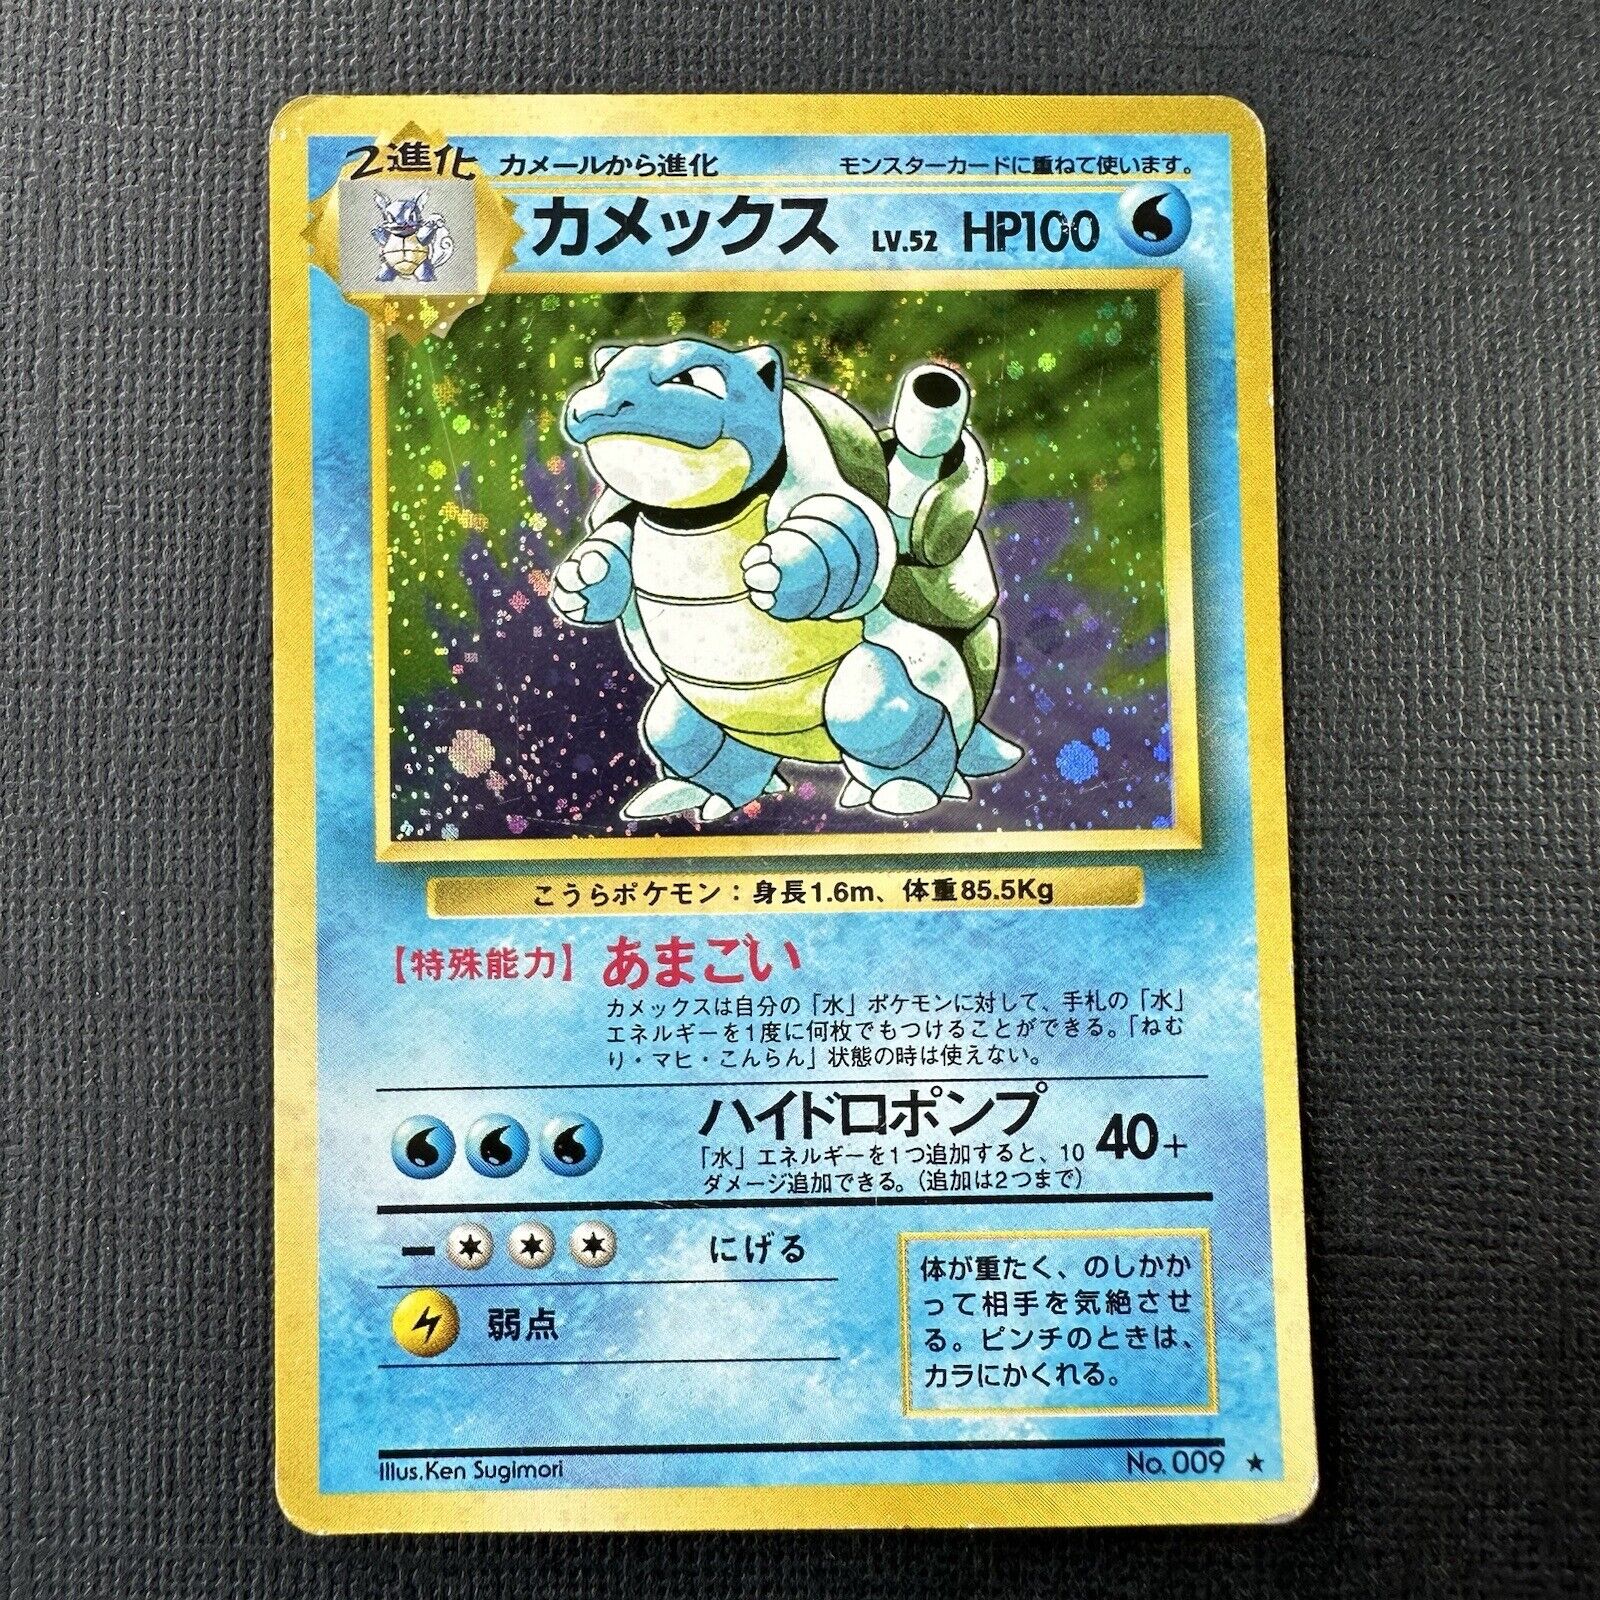 1996 Blastoise Japanese Pokemon Card BASE SET Holo No.009